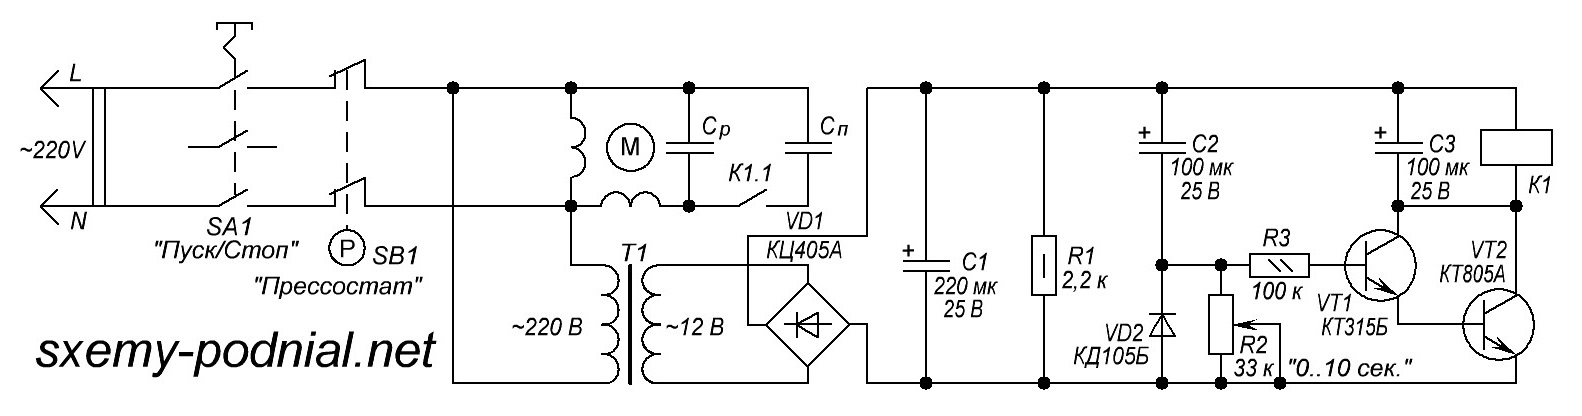 Схема запуска асинхронного мотора в компрессоре 